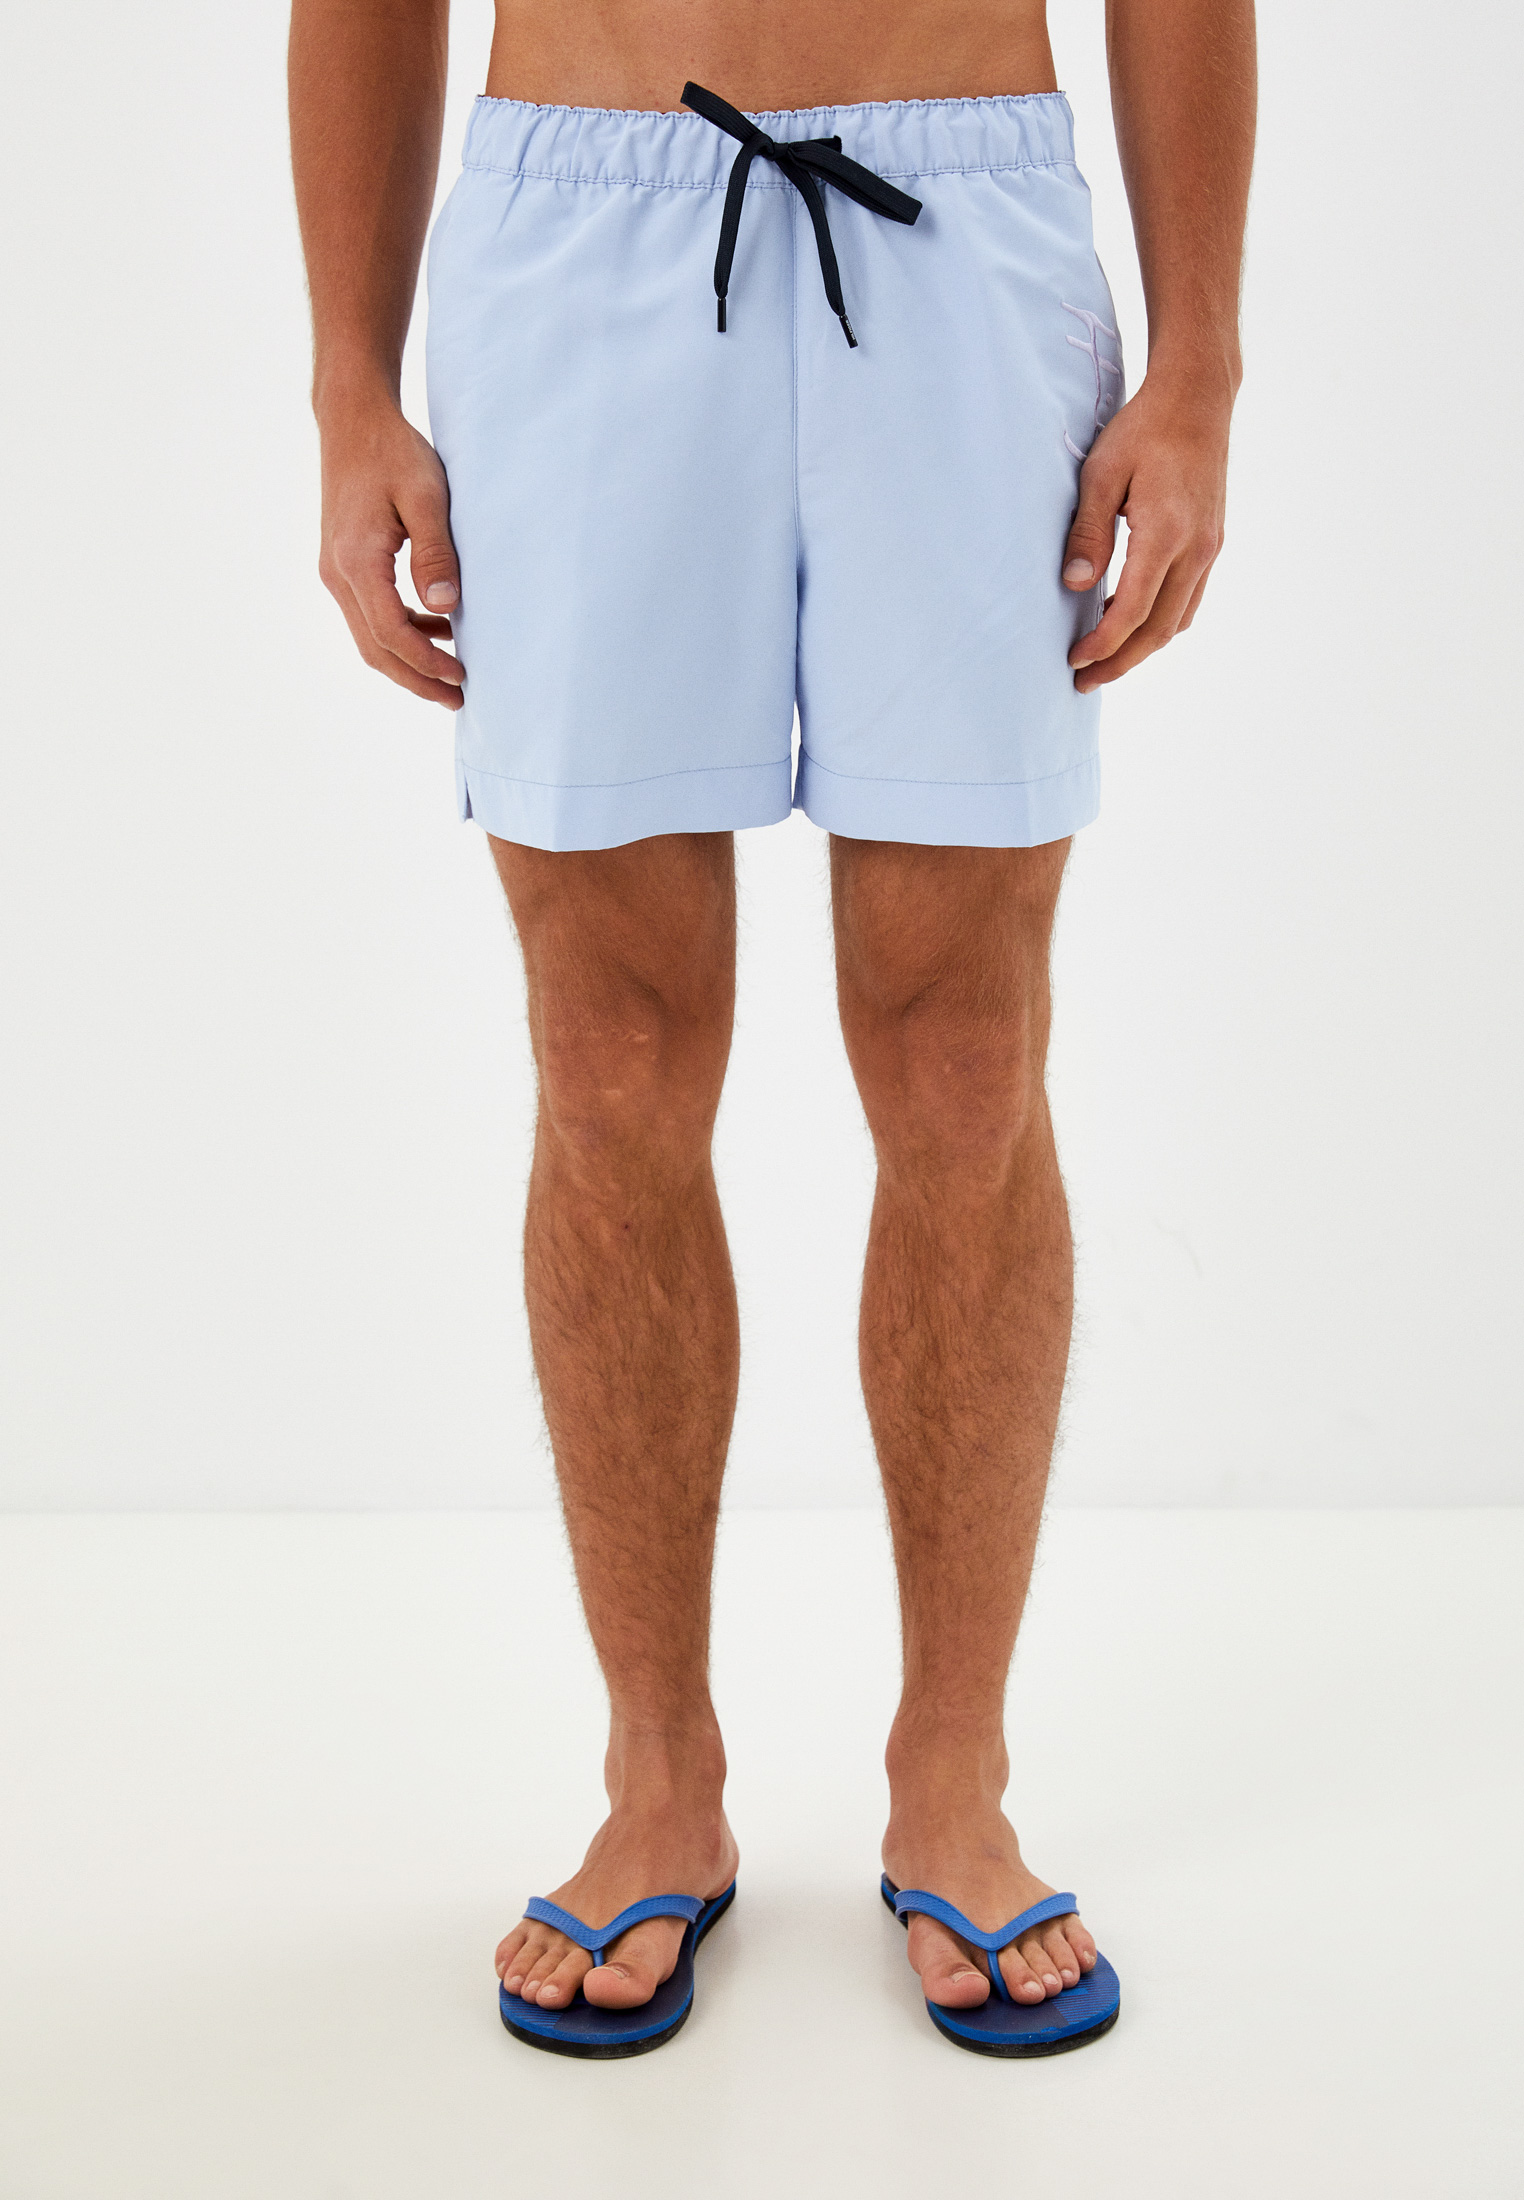 Мужские шорты для плавания Tommy Hilfiger (Томми Хилфигер) UM0UM02299